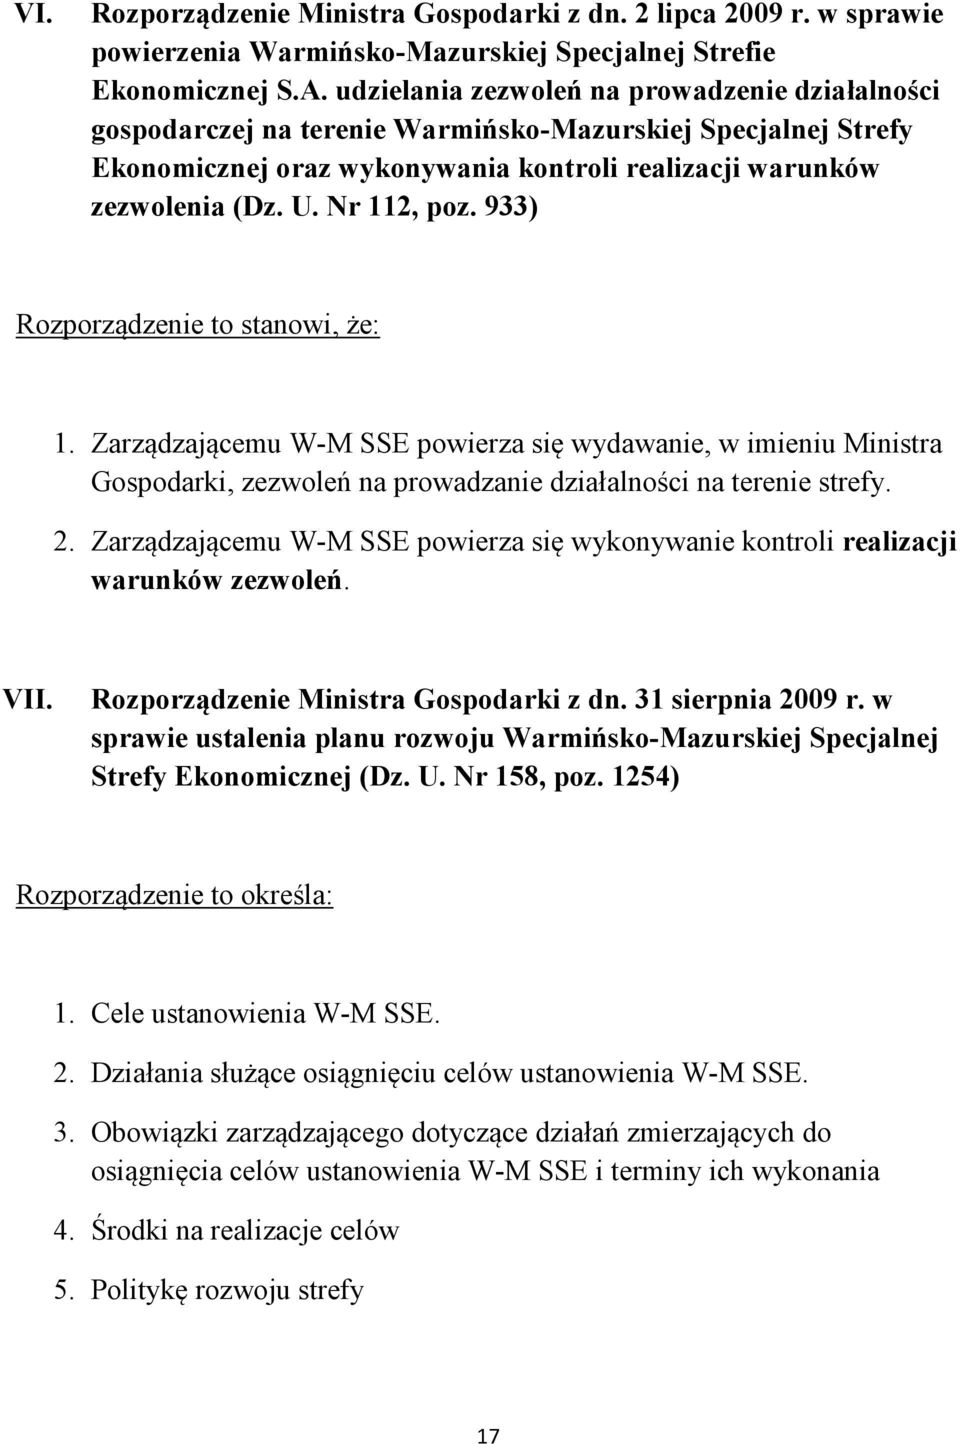 933) Rozporządzenie to stanowi, że: 1. Zarządzającemu W-M SSE powierza się wydawanie, w imieniu Ministra Gospodarki, zezwoleń na prowadzanie działalności na terenie strefy. 2.